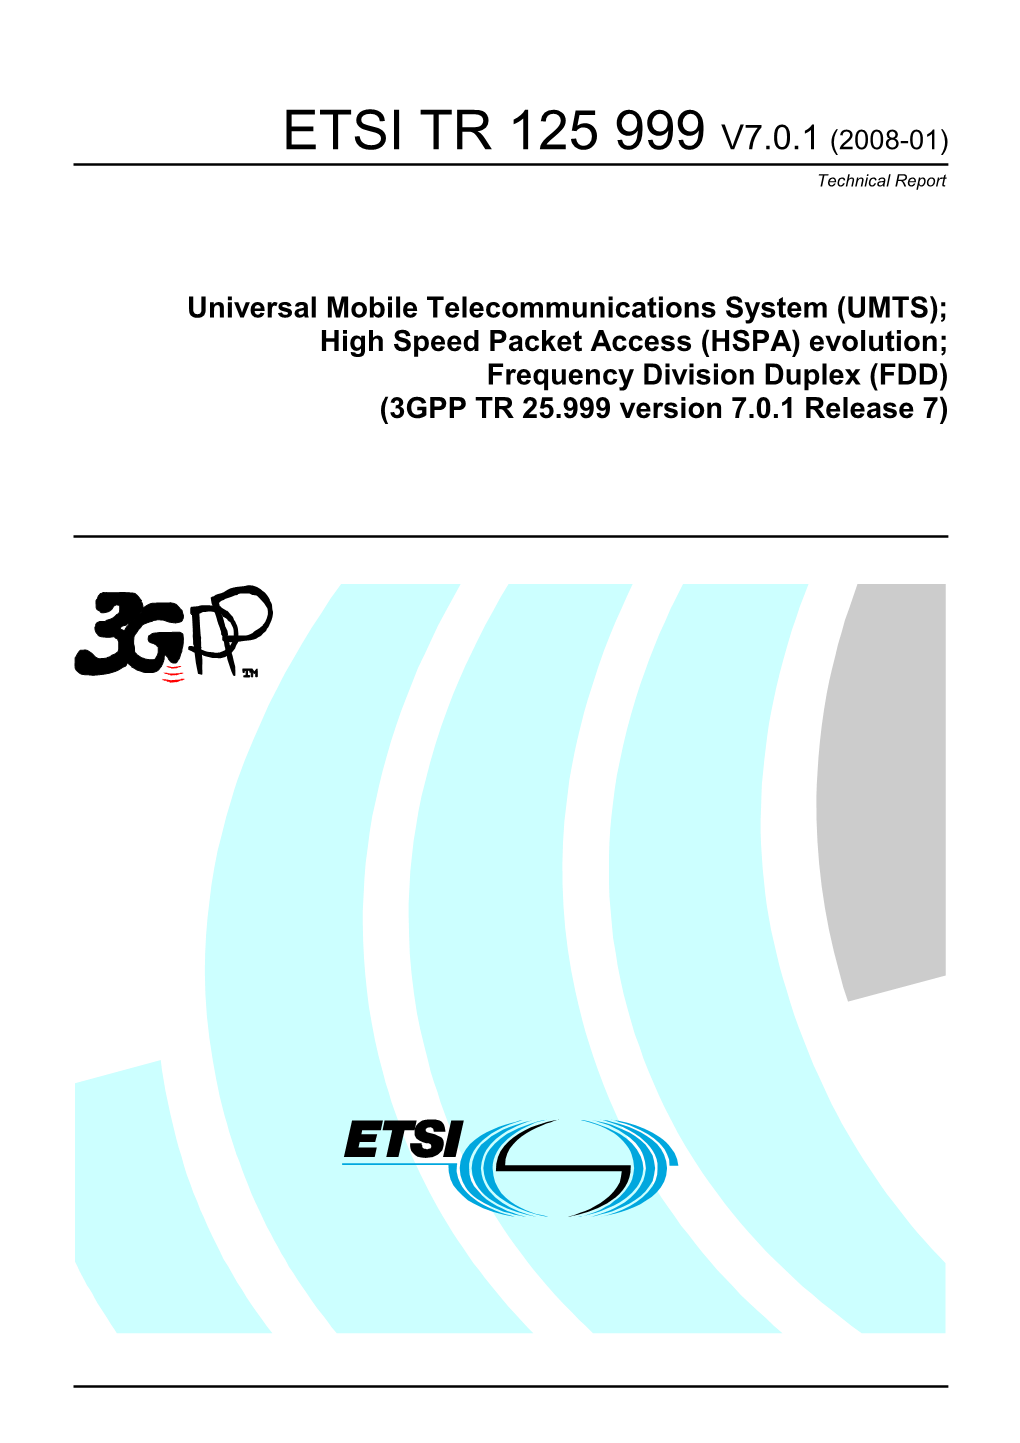 ETSI TR 125 999 V7.0.1 (2008-01) Technical Report